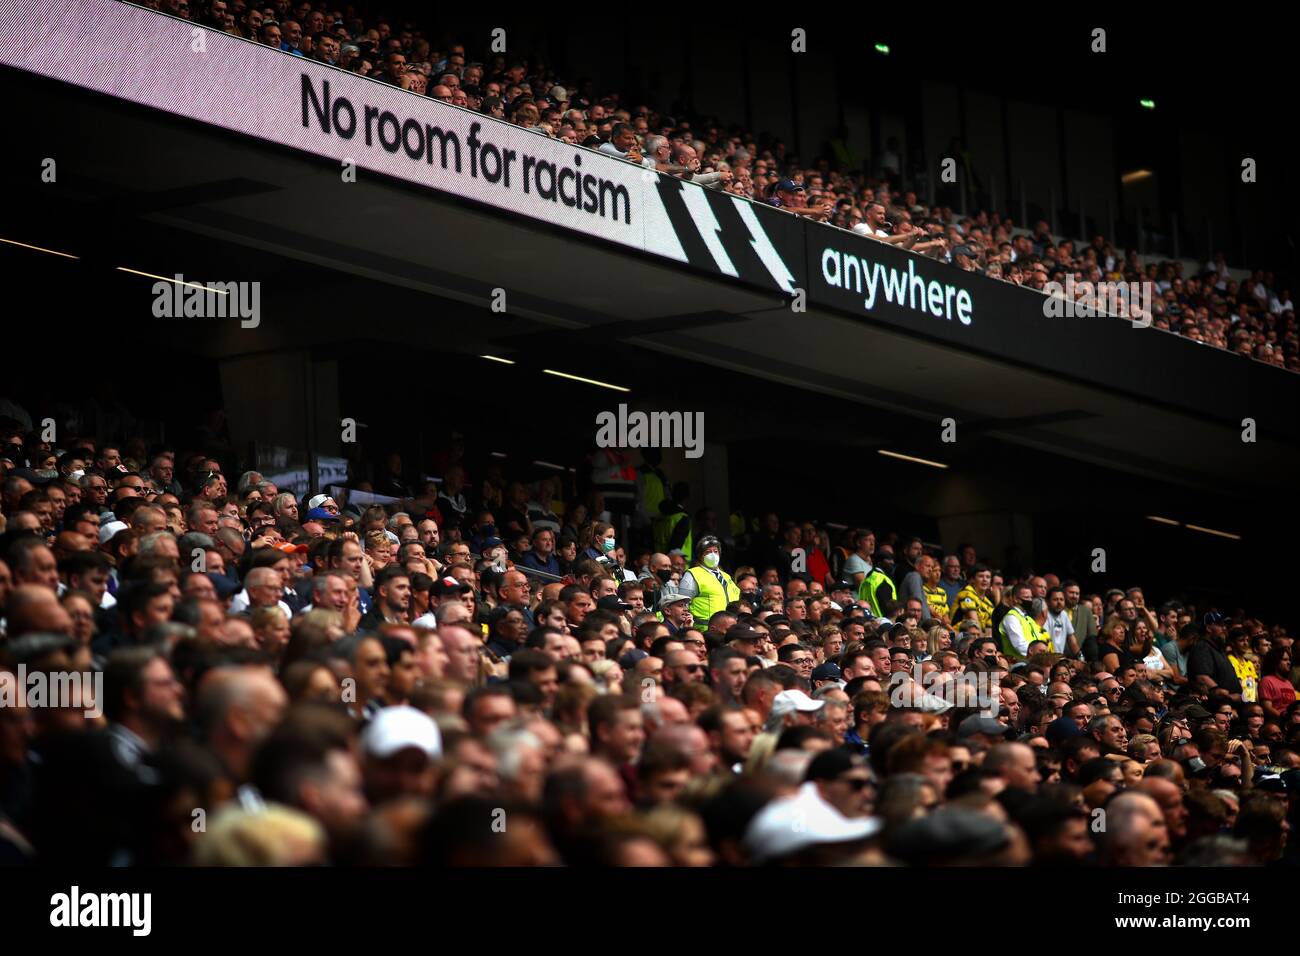 Aucune bannière de racisme n'est visible pendant le match - Tottenham Hotspur v Watford, Premier League, Tottenham Hotspur Stadium, Londres, Royaume-Uni - 29 août 2021 usage éditorial uniquement - des restrictions DataCo s'appliquent Banque D'Images